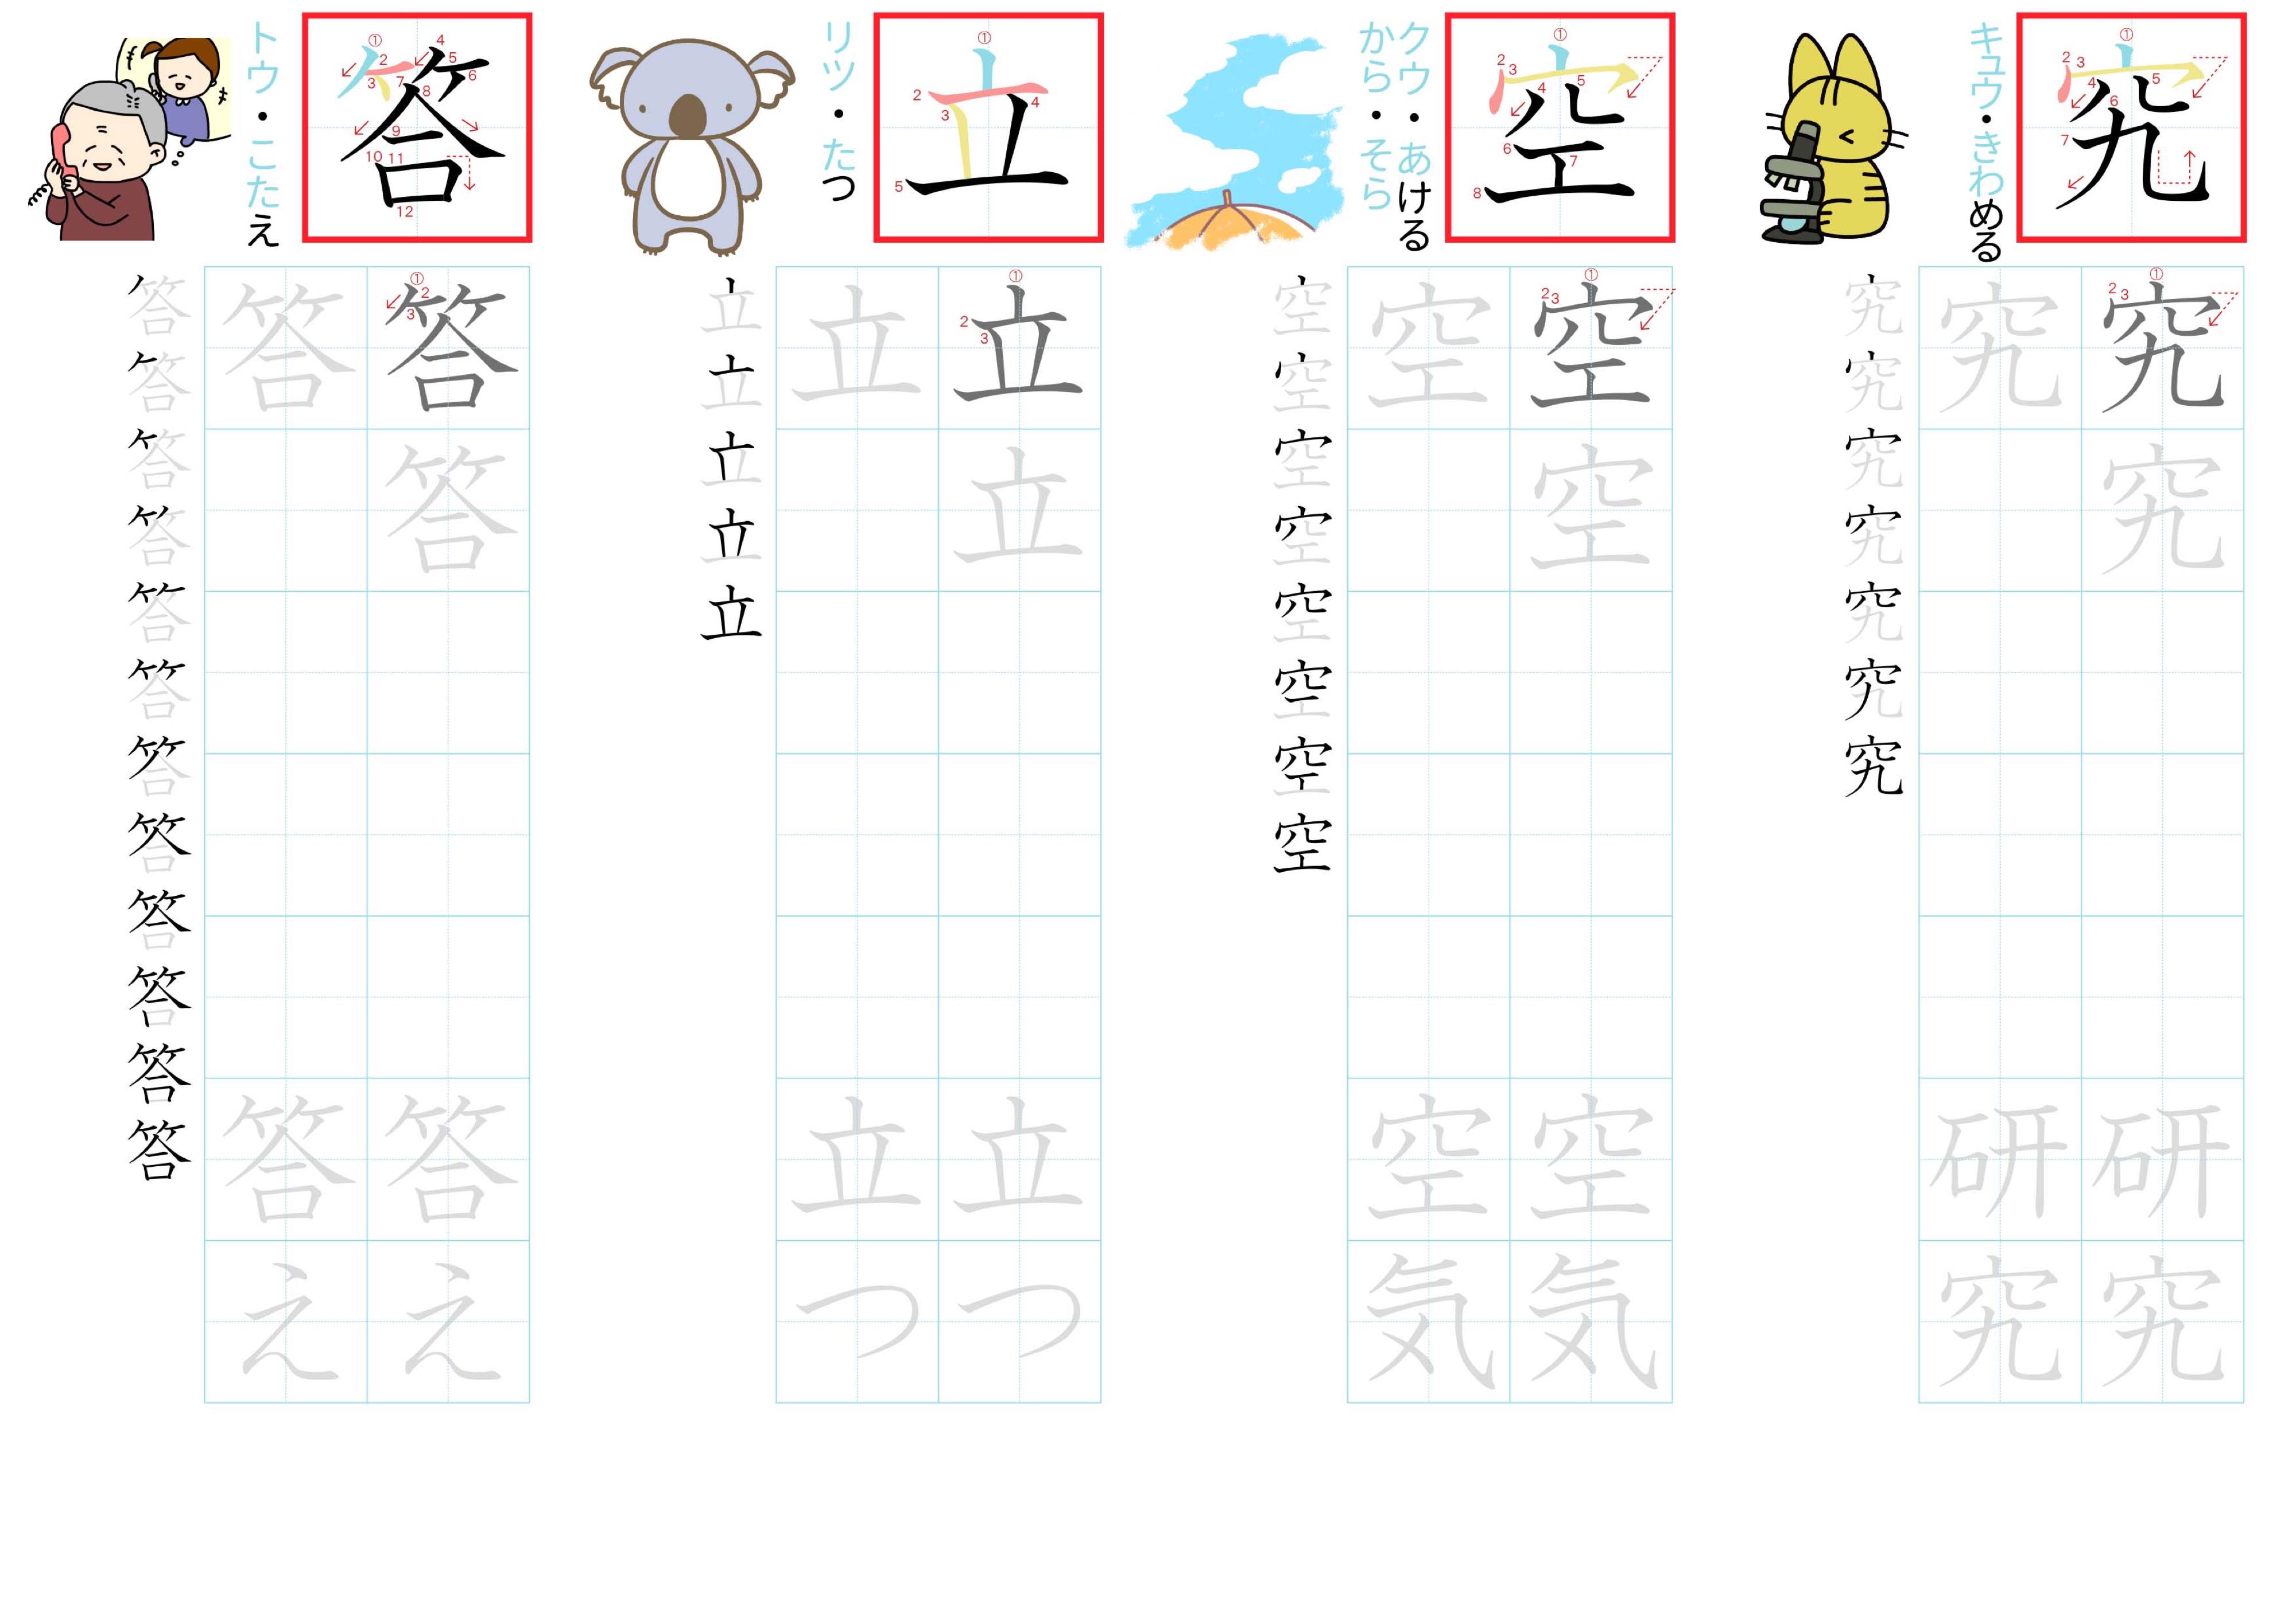 kanji-practice-card-n4-japanese-050